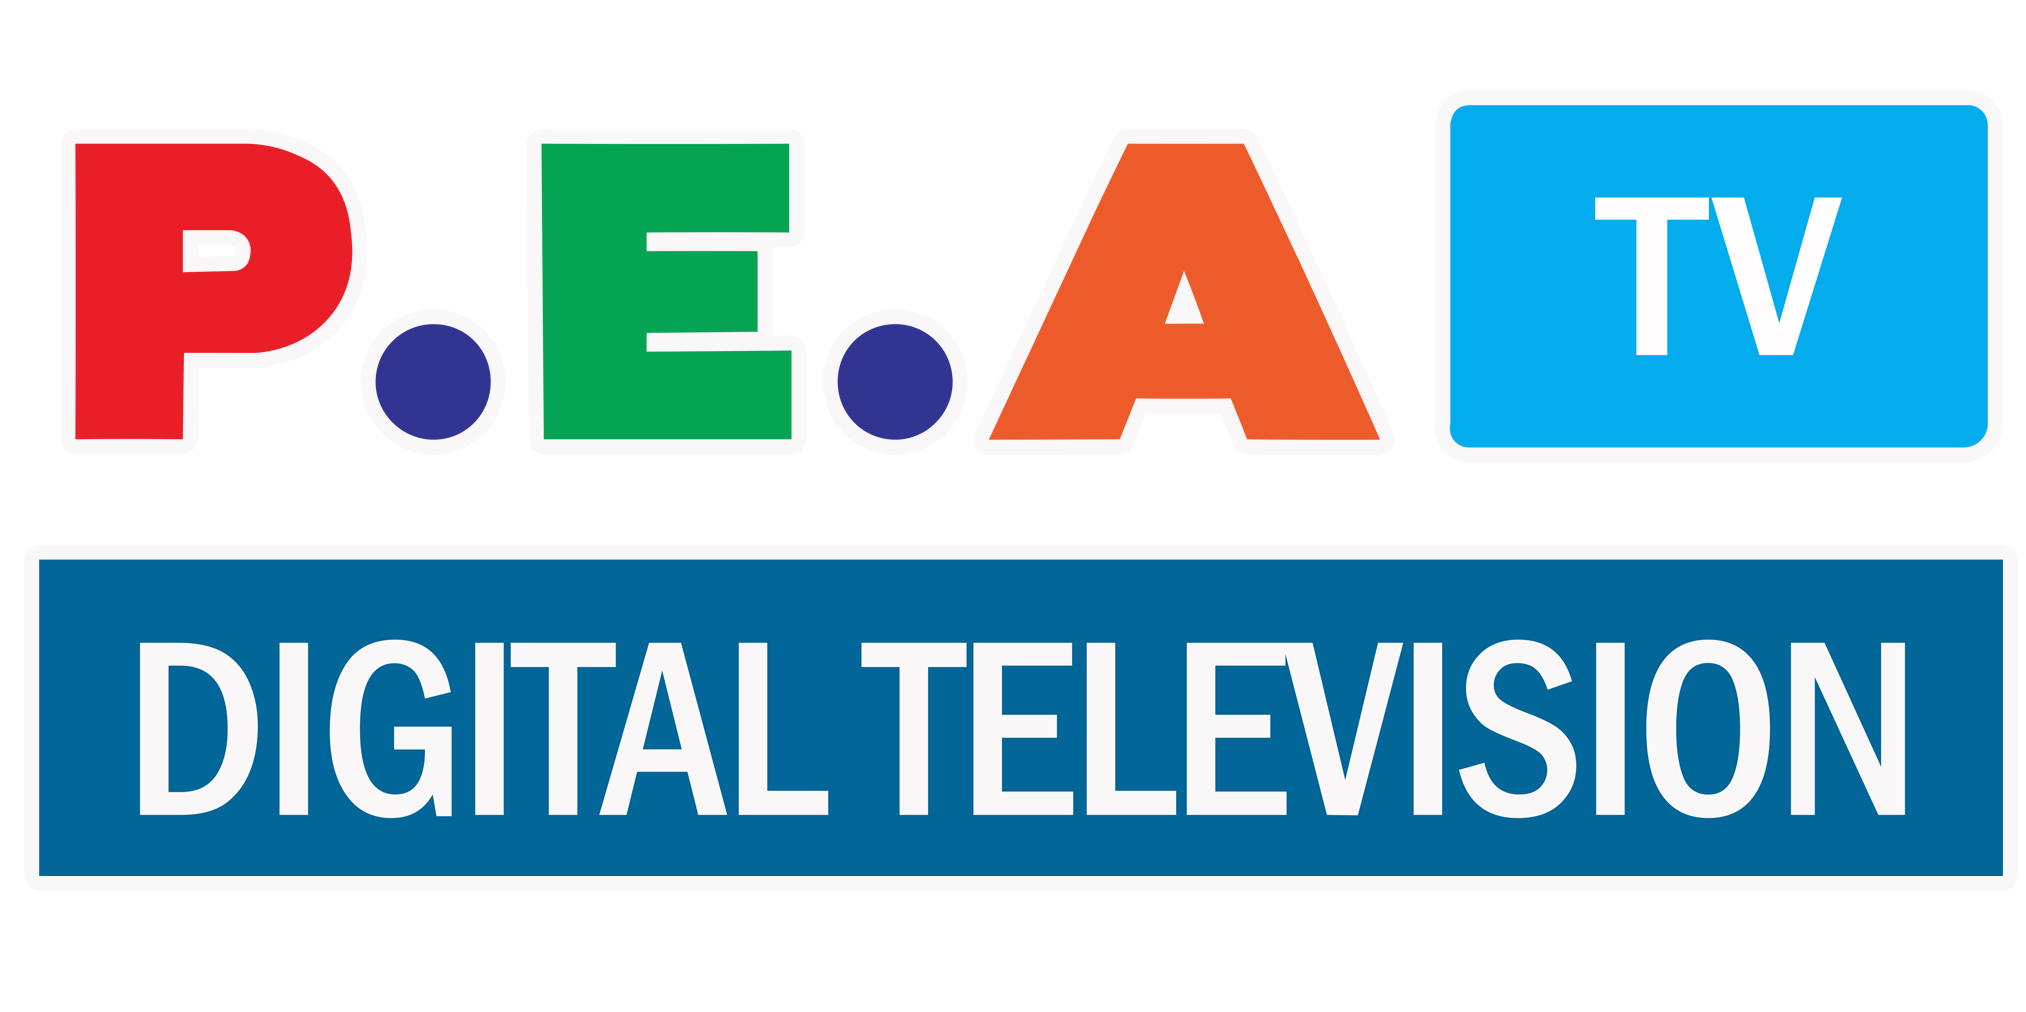 ระบบทีวีอาคาร , ระบบทีวีดิจิตอล , P.E.A. Digital Television